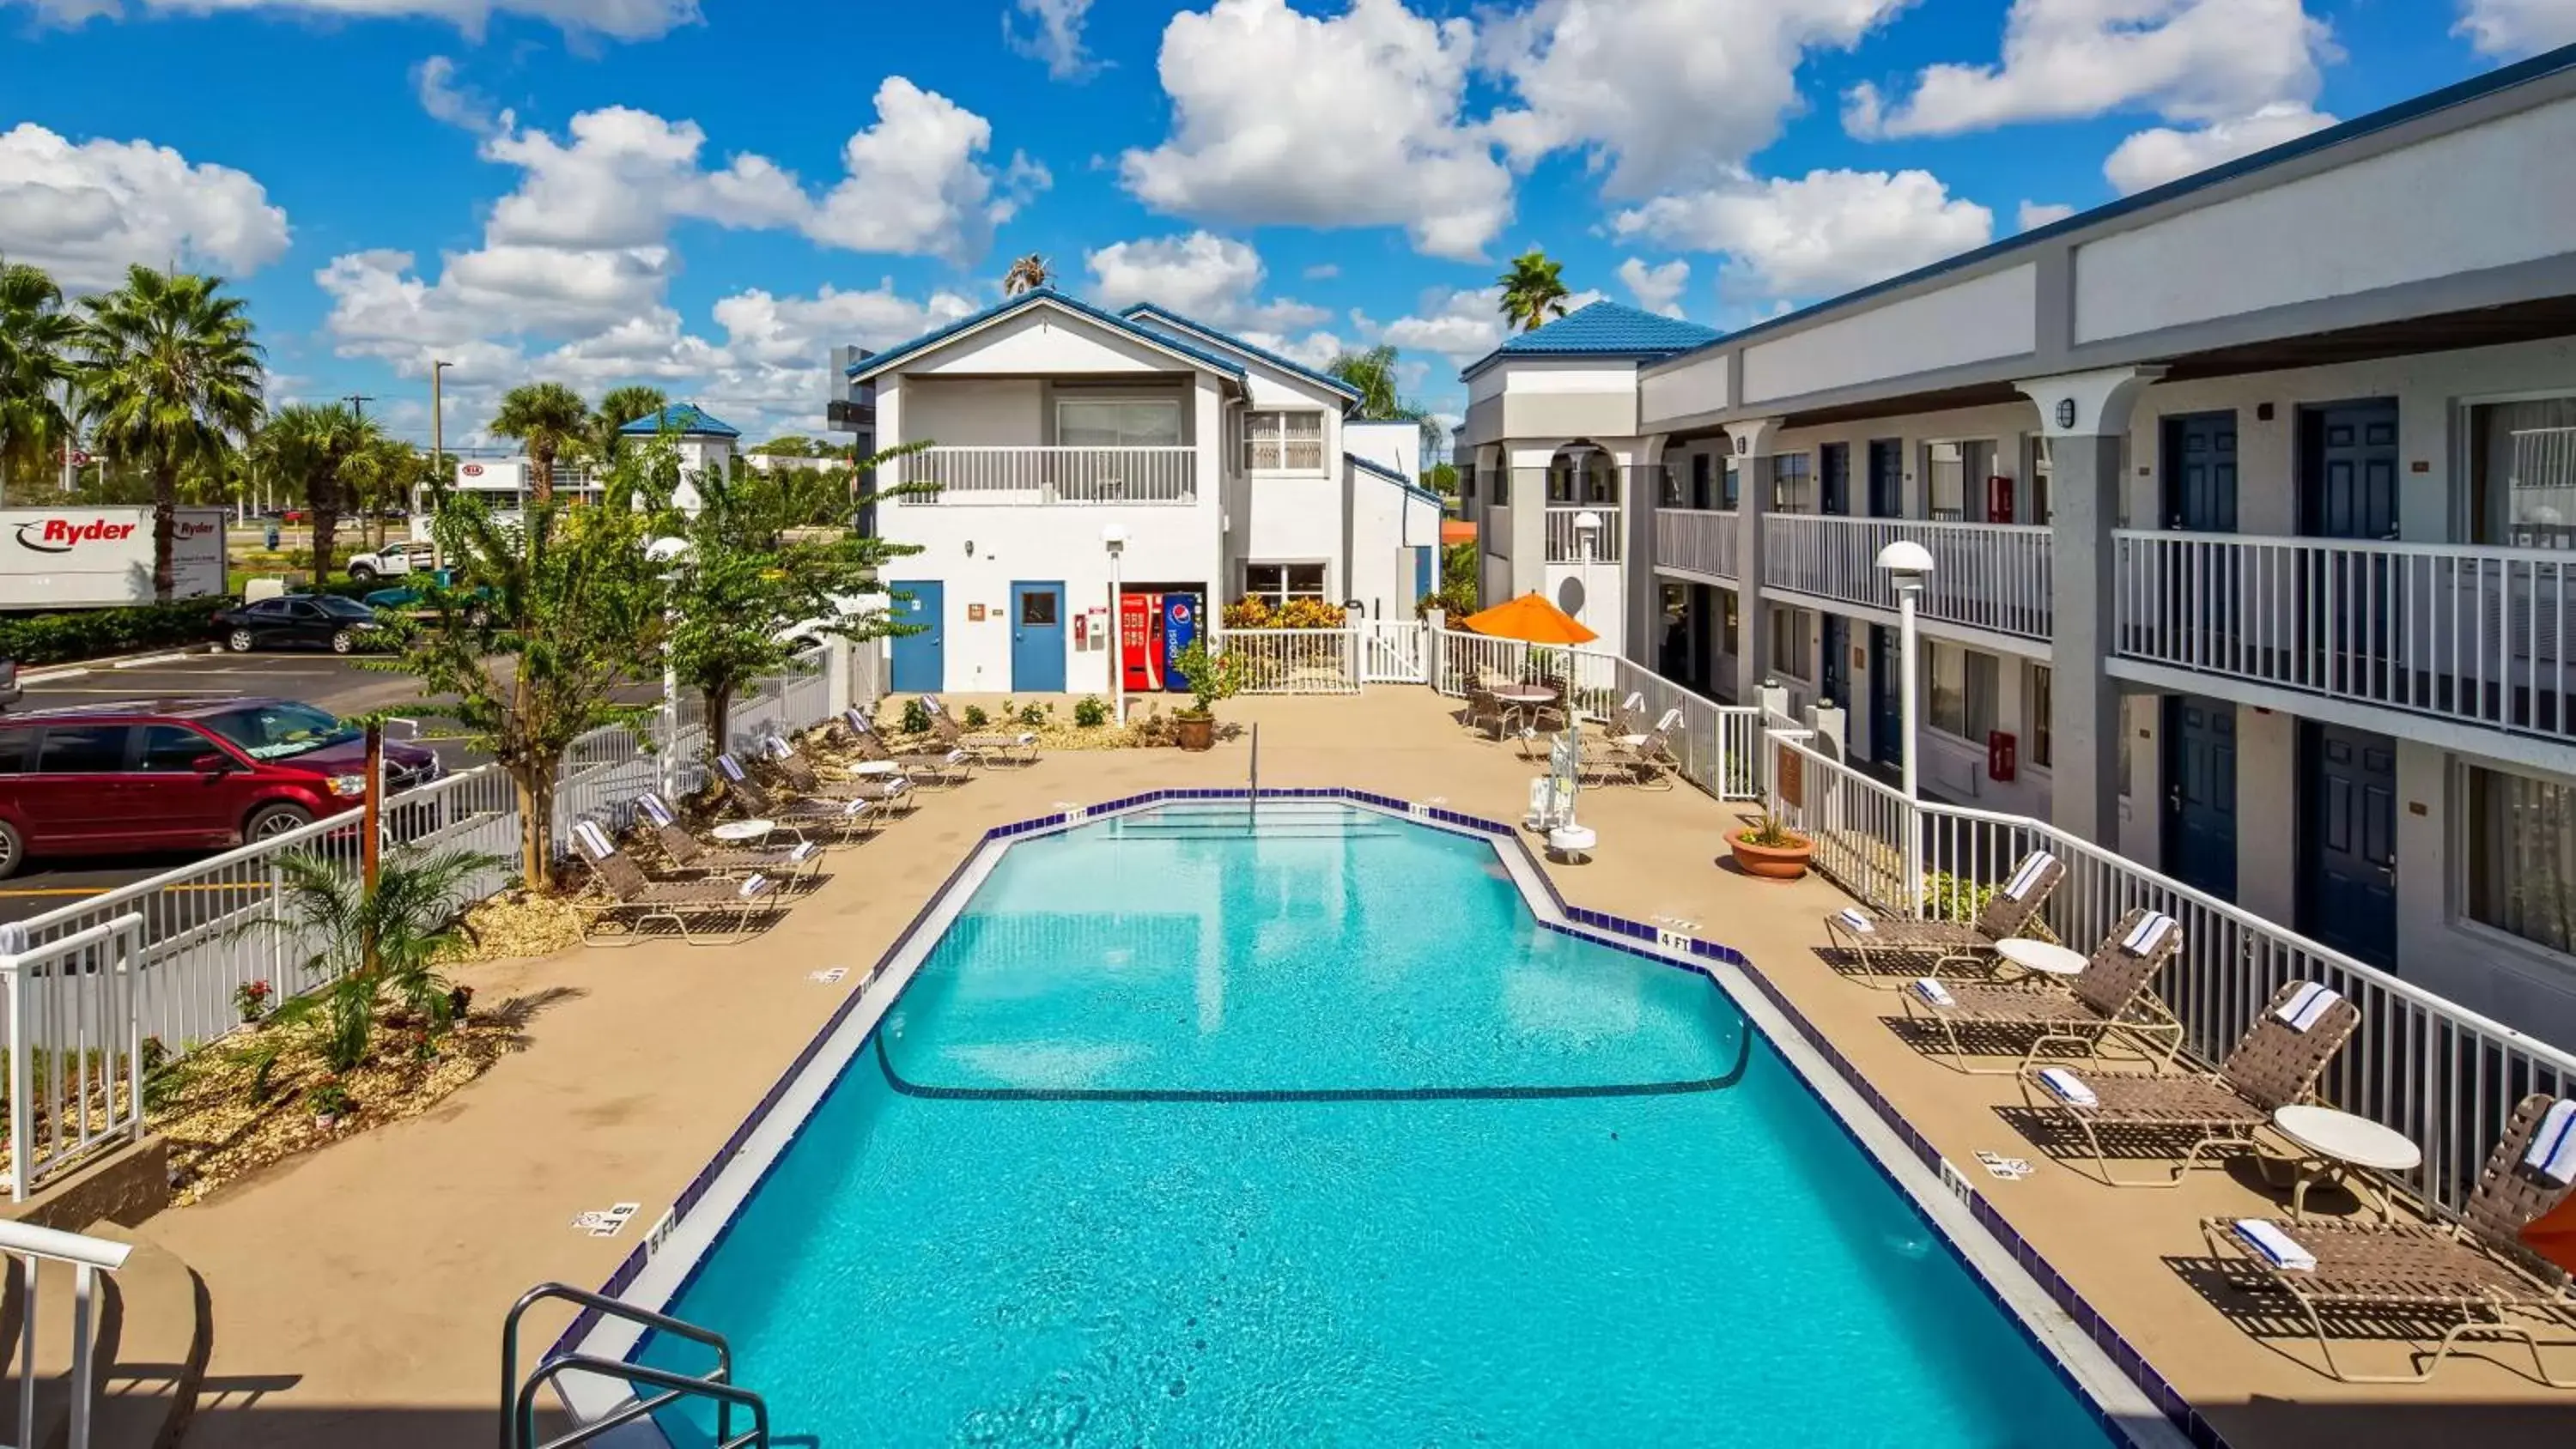 On site, Pool View in Best Western Orlando East Inn & Suites